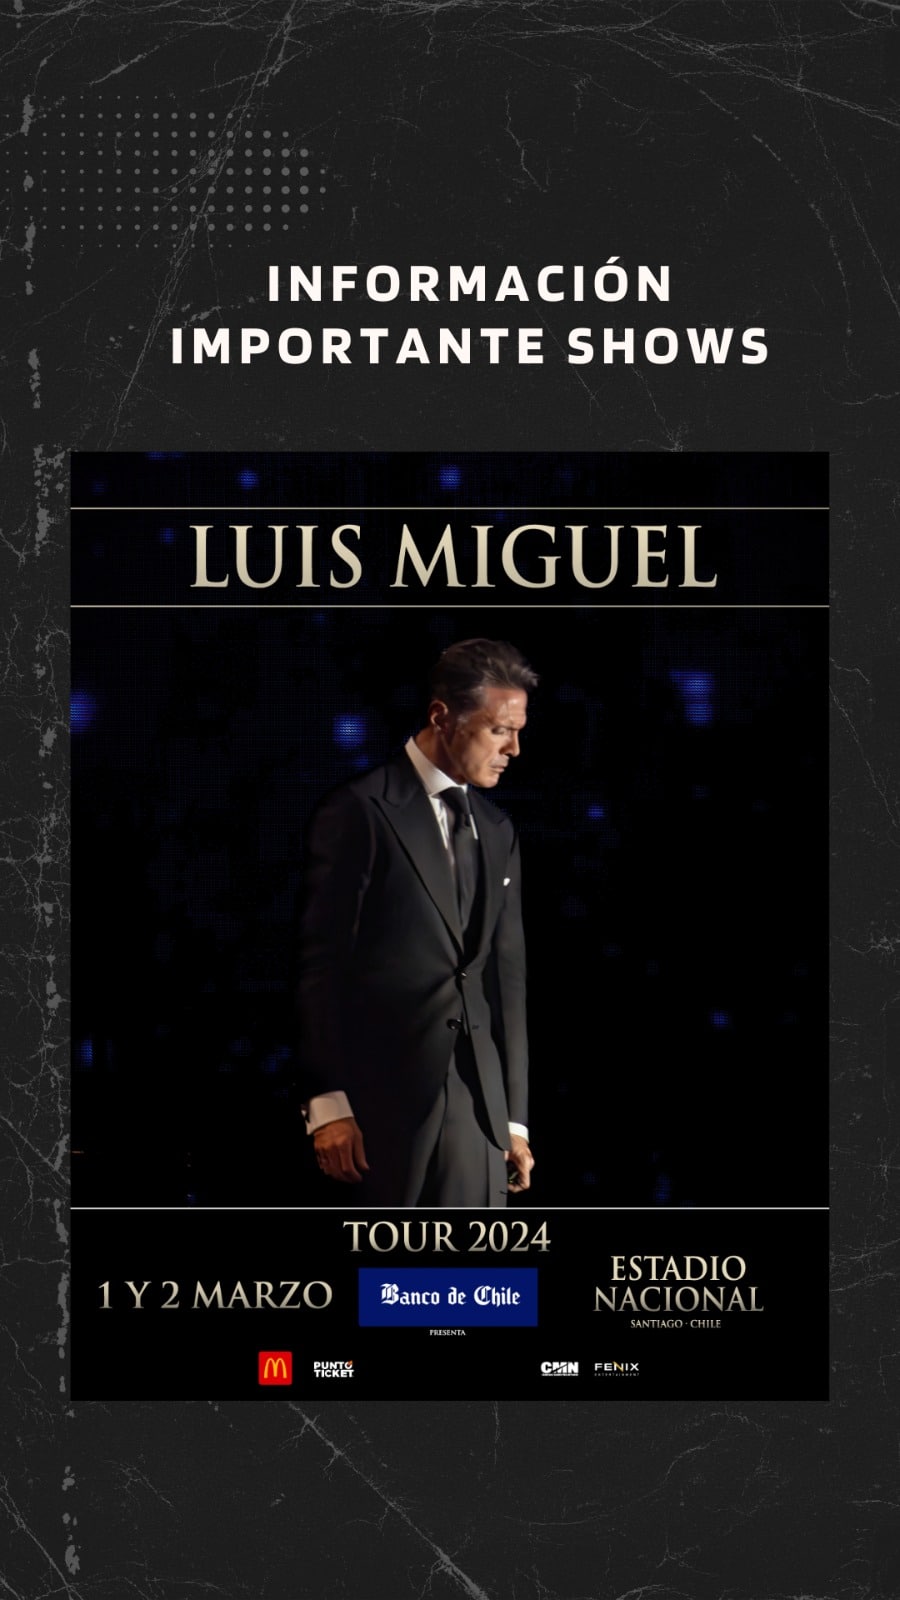 ¡No te pierdas los increíbles conciertos de Luis Miguel en Chile!